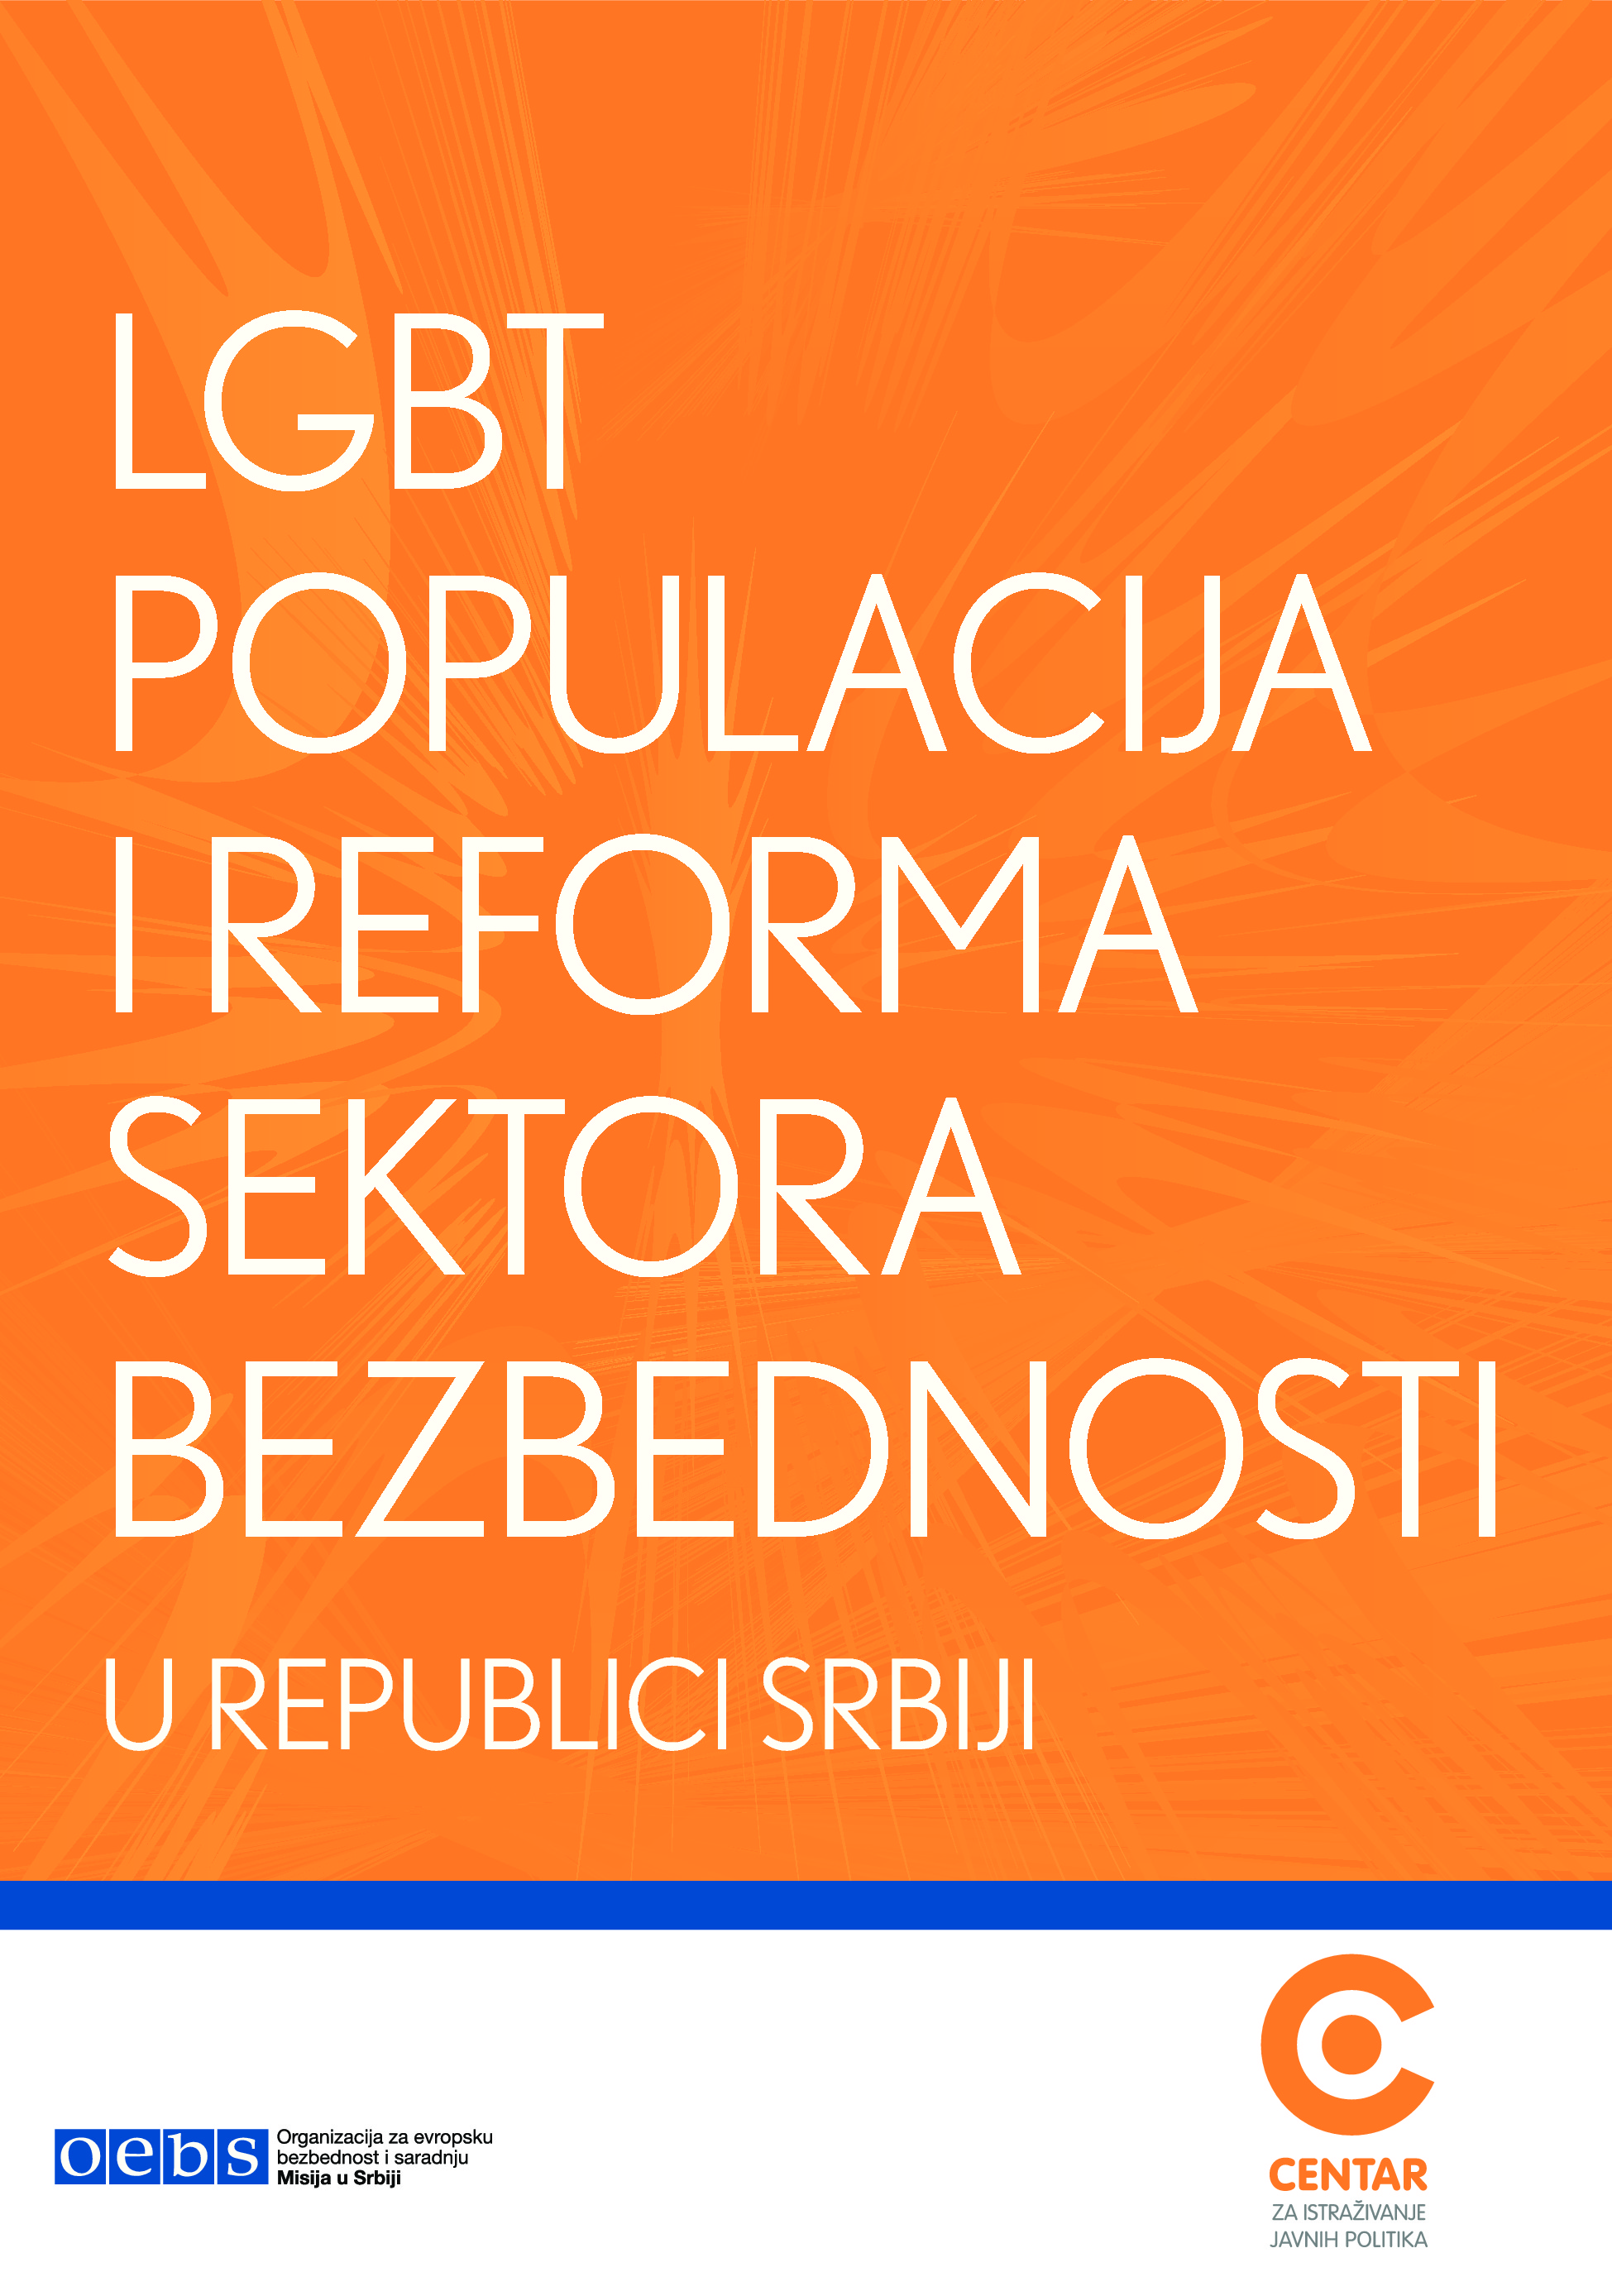 LGBT populacija i reforma sektora bezbednosti u Srbiji